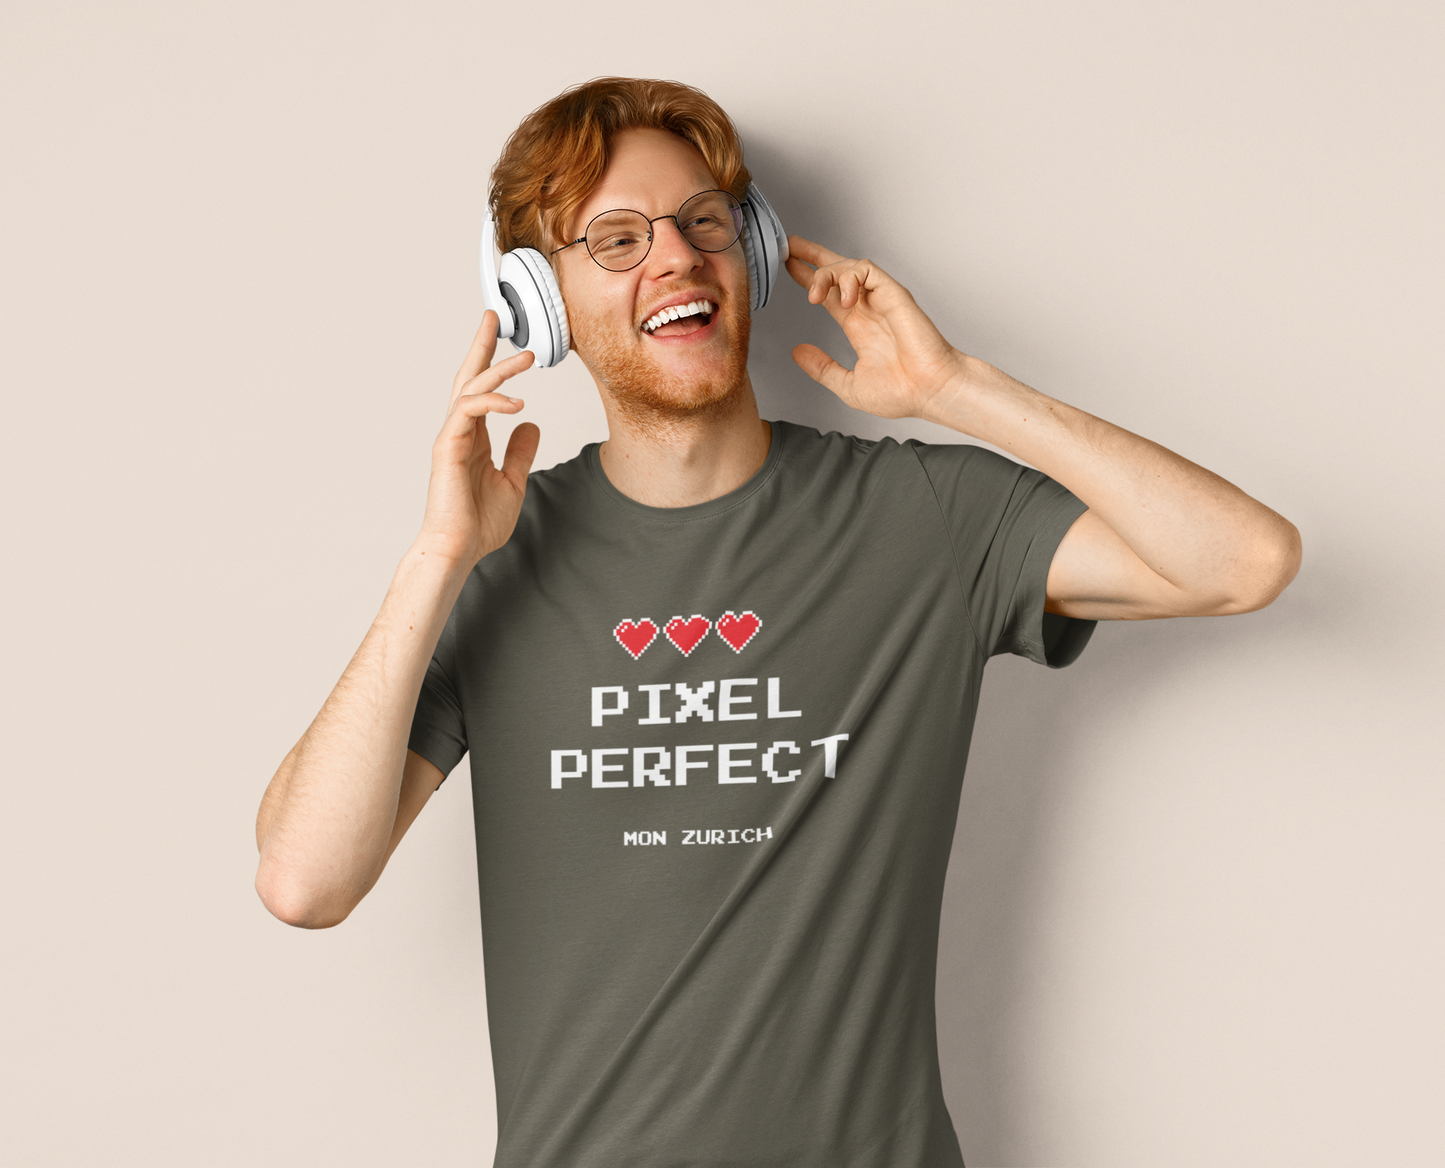 Pixel Perfct T-Shirt In Dark Originals - Zurich Mon